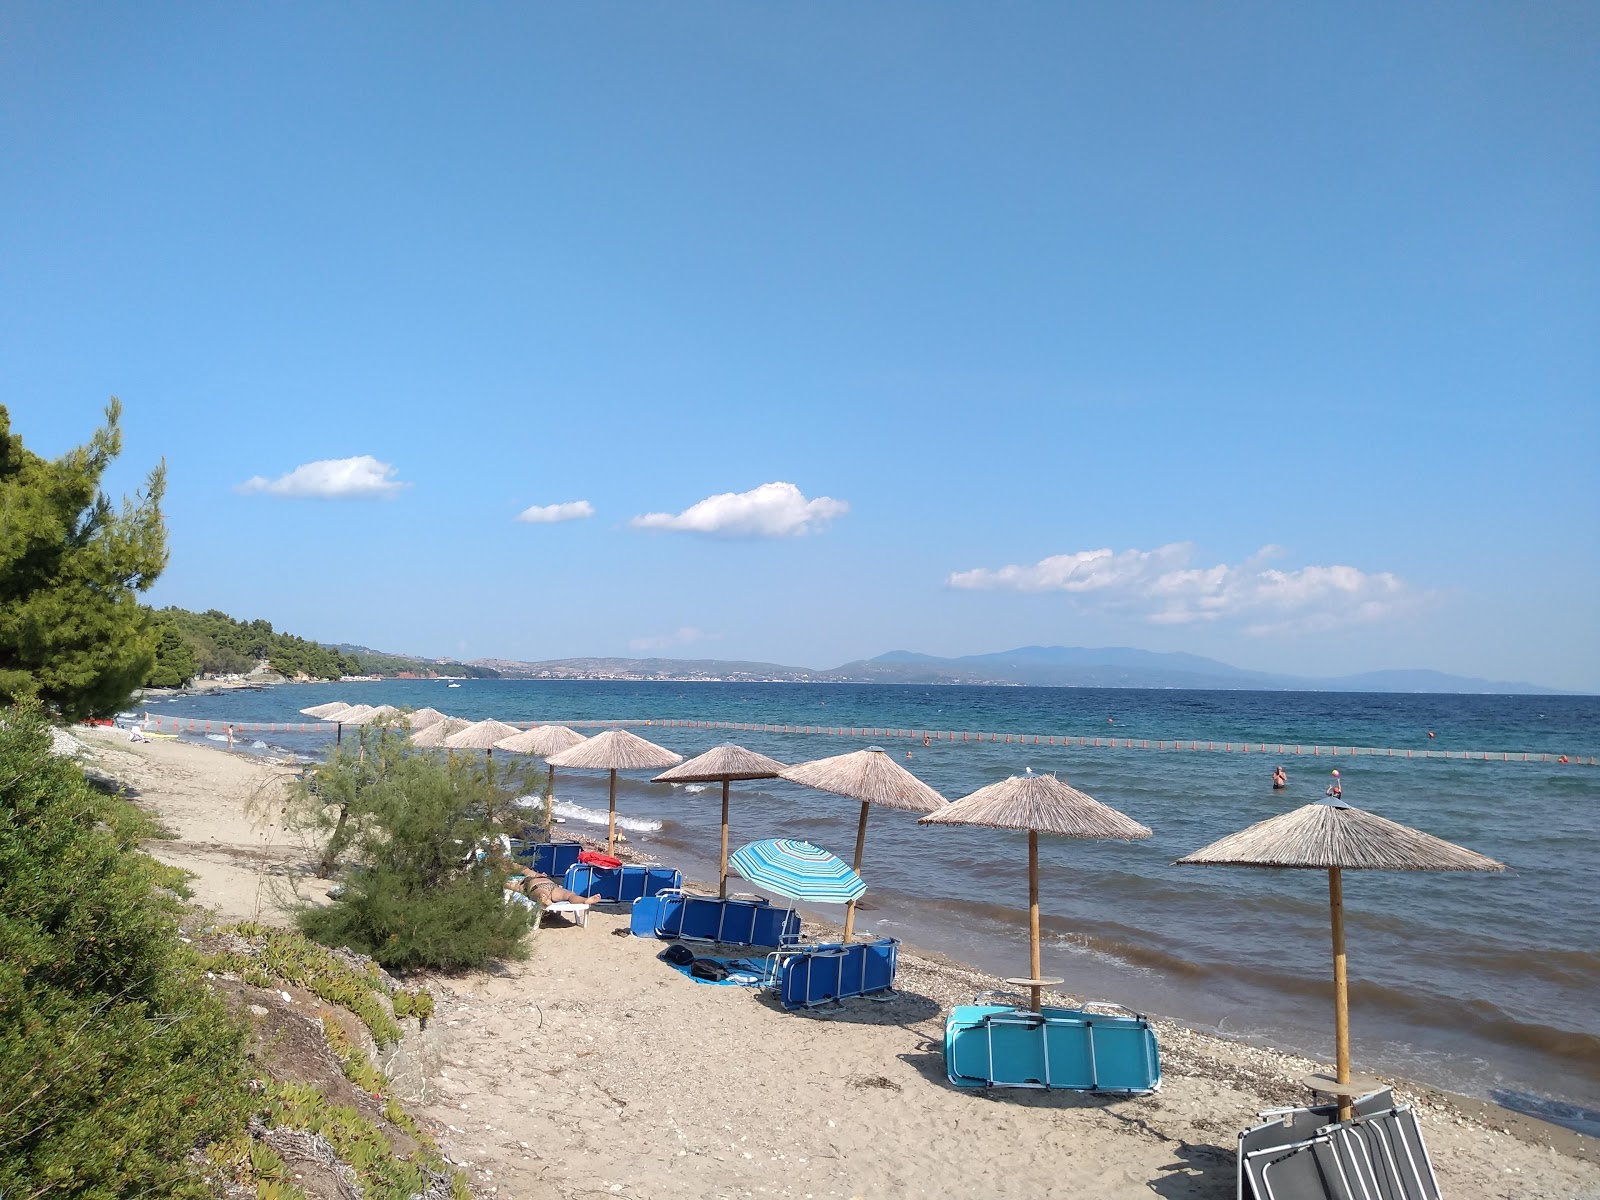 Fotografie cu Metamorfossi beach cu o suprafață de apa turcoaz